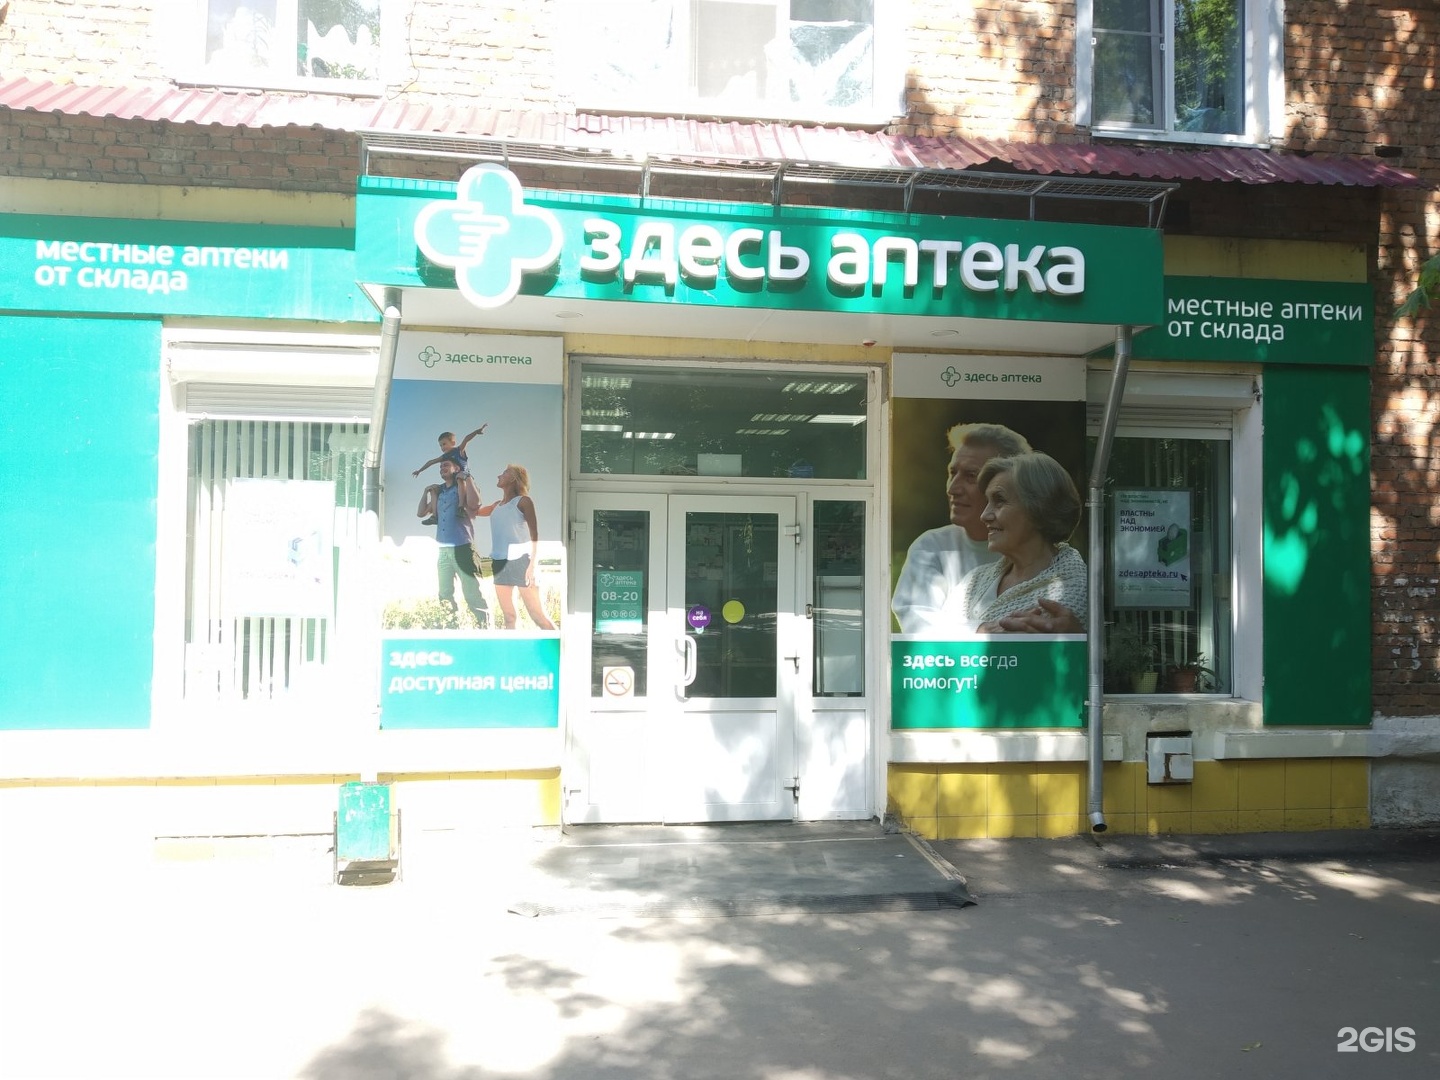 Здесь Аптека Пузакова 1